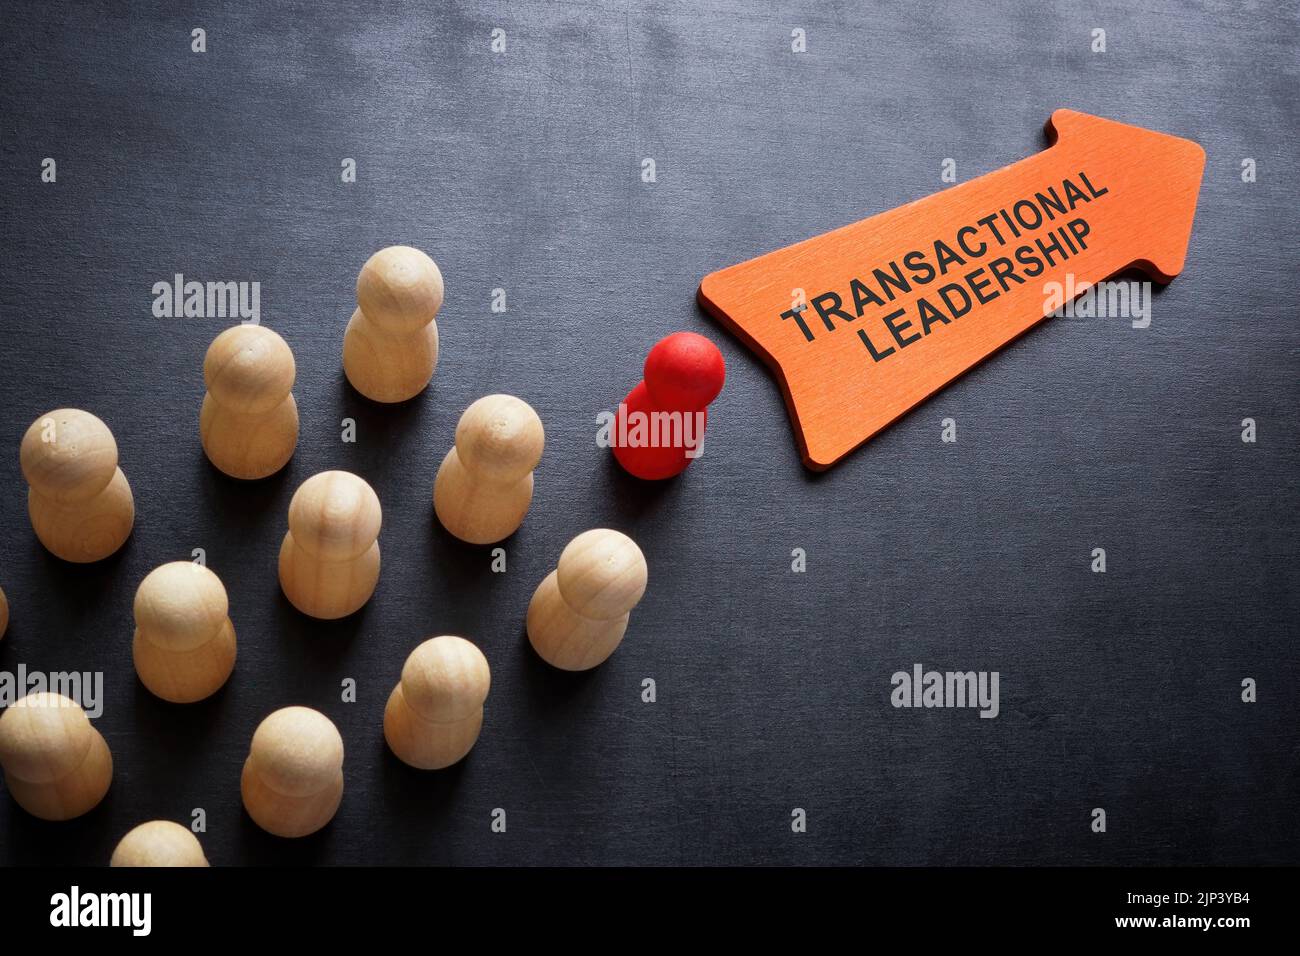 Figurillas y flecha con el signo de liderazgo transaccional. Foto de stock